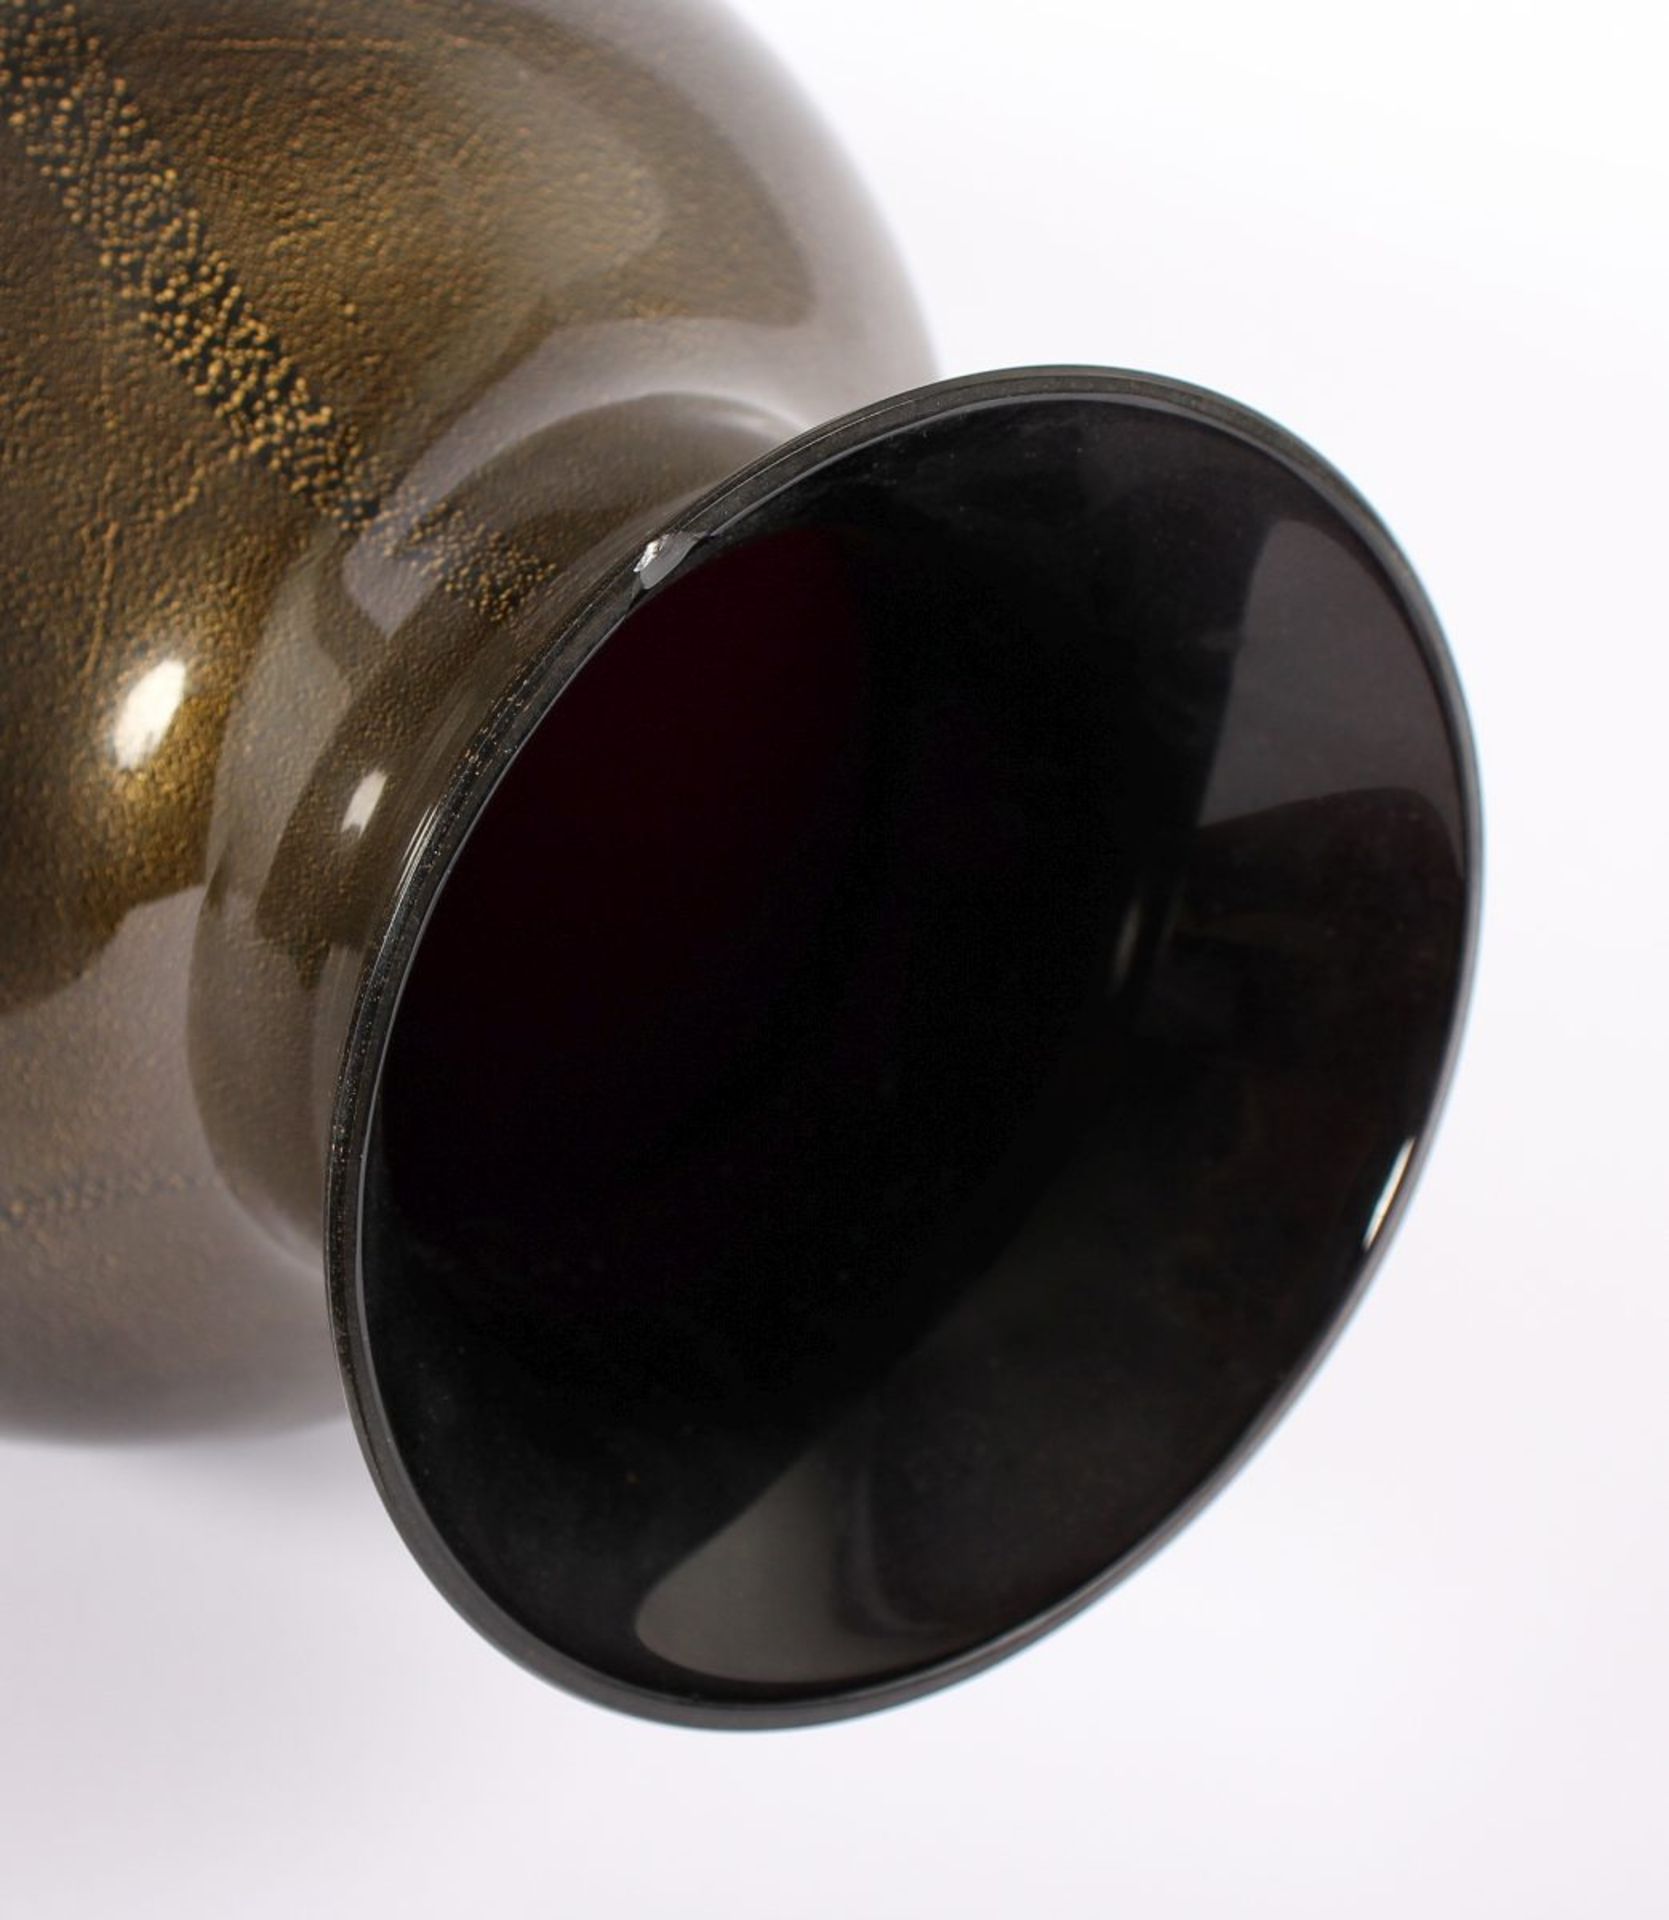 VASE, farbloses Glas, schwarzviolett hinterfangen mit Goldstaubeinschmelzungen, an der Mündung min. - Image 2 of 3